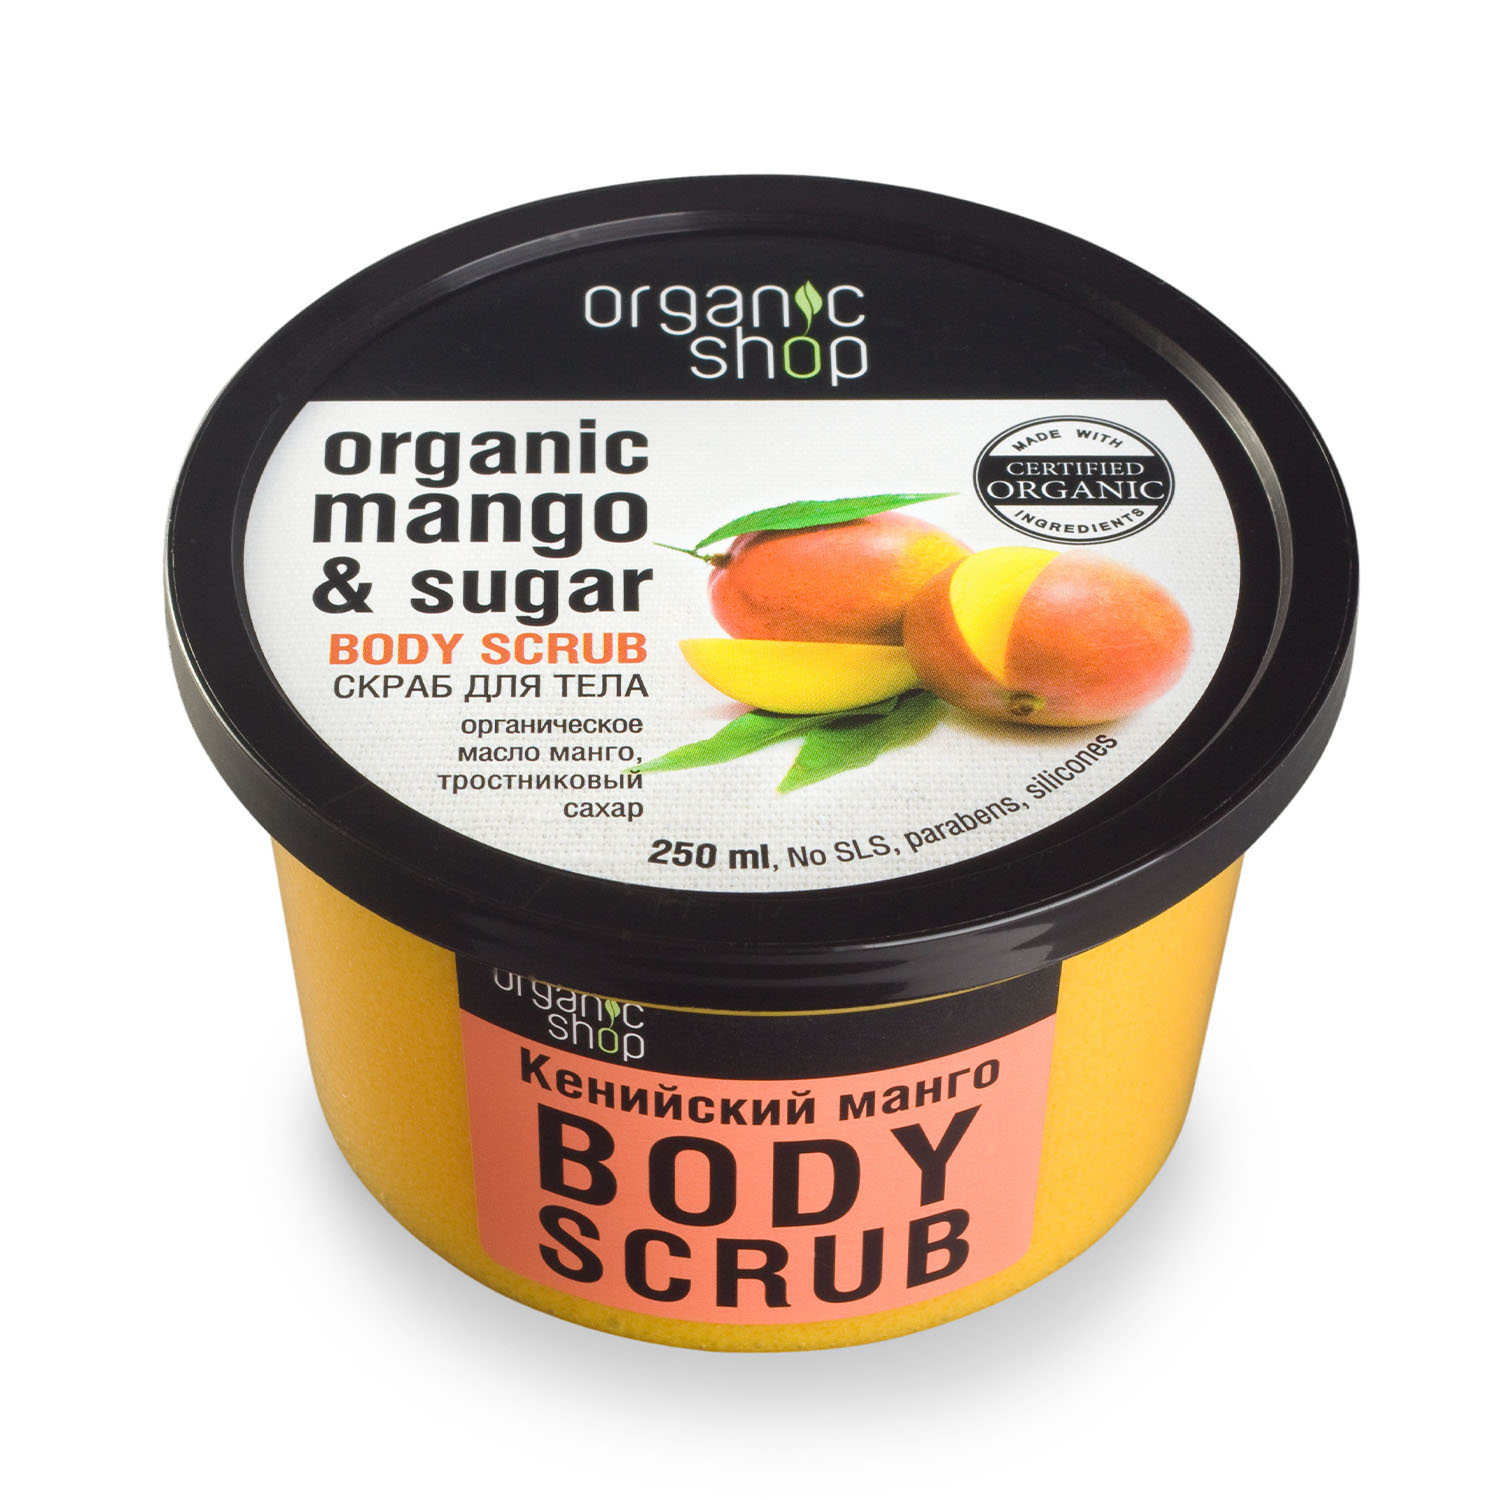 organic shop скраб для тела кенийский манго 250мл 2 шт Organic Shop Скраб для тела Кенийский манго, 250 мл (Organic Shop, Классика)